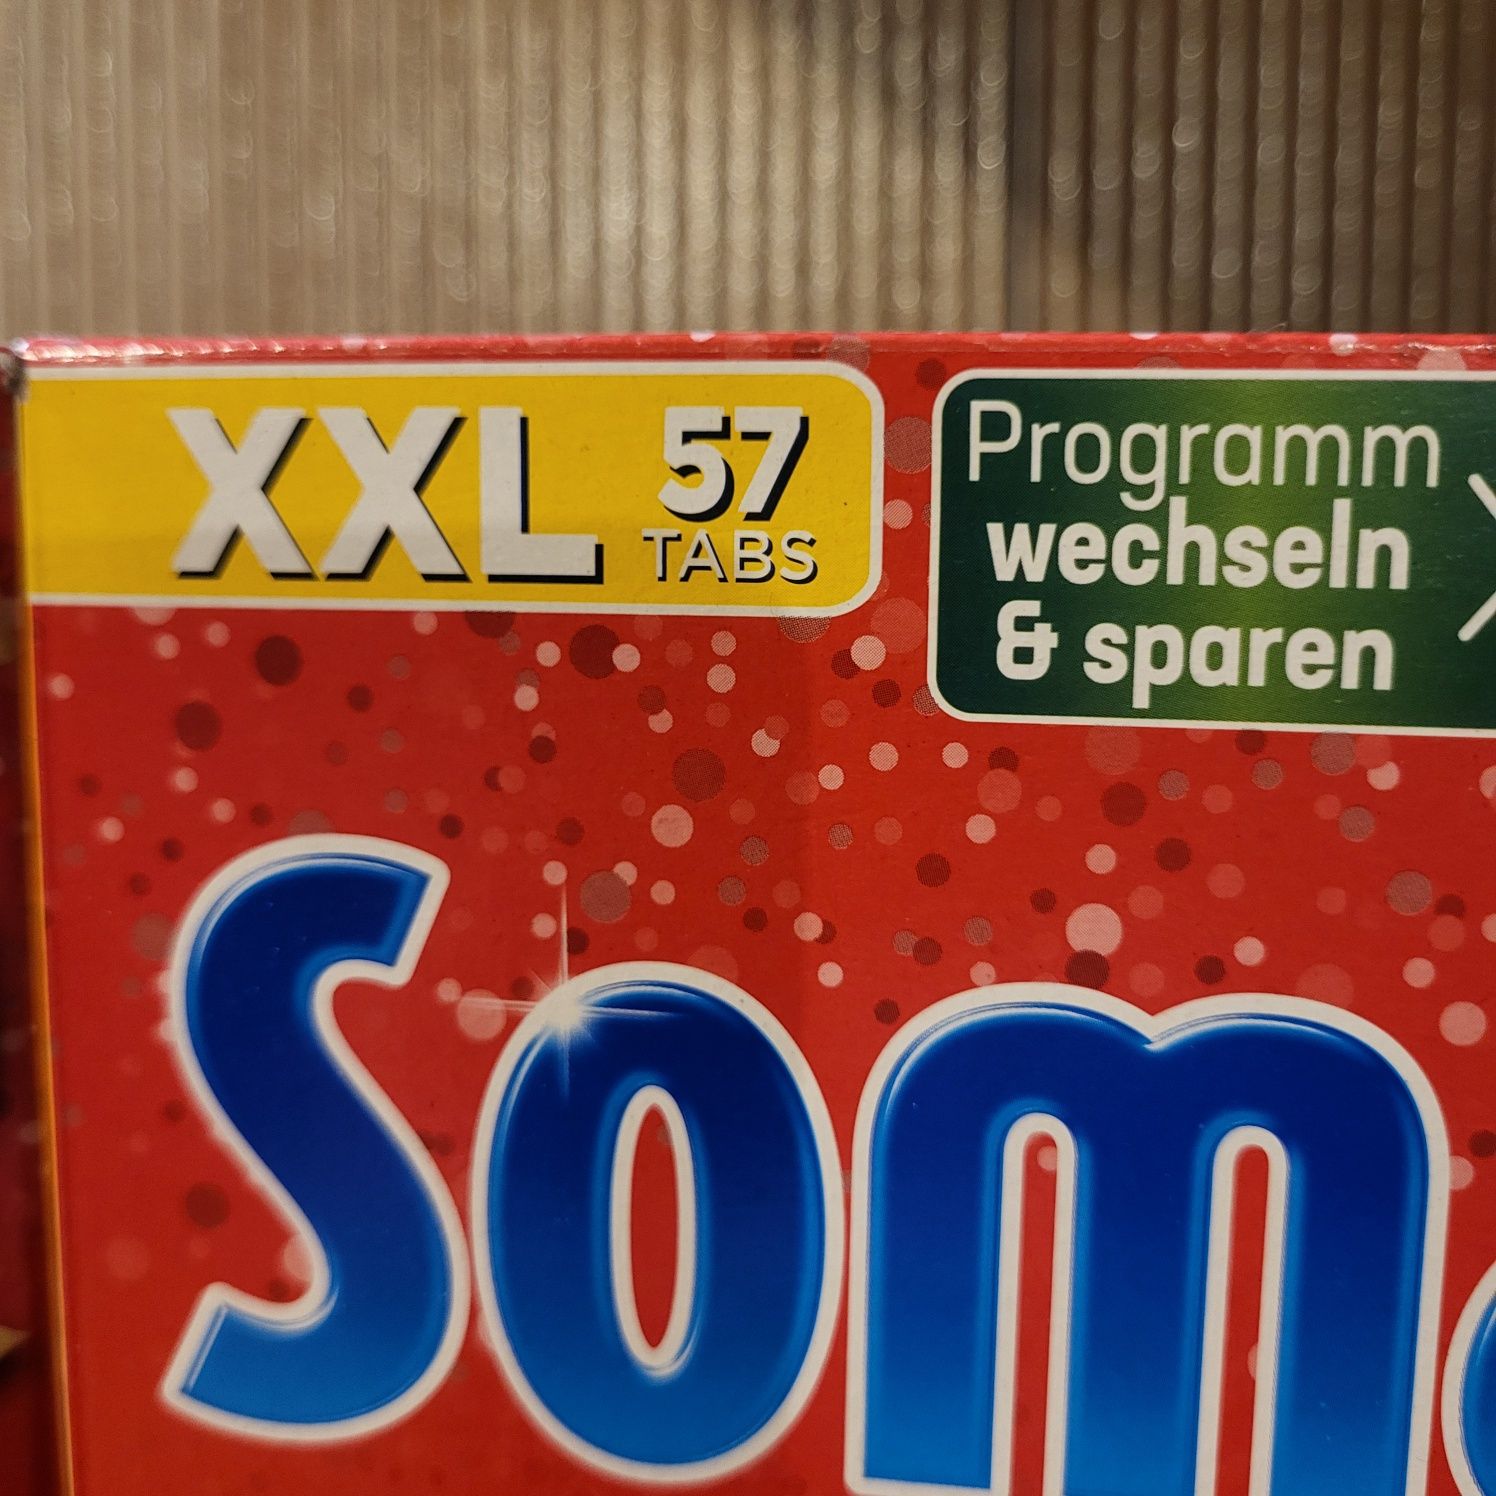 Somat 2x57szt tabletki do zmywarki Niemcy